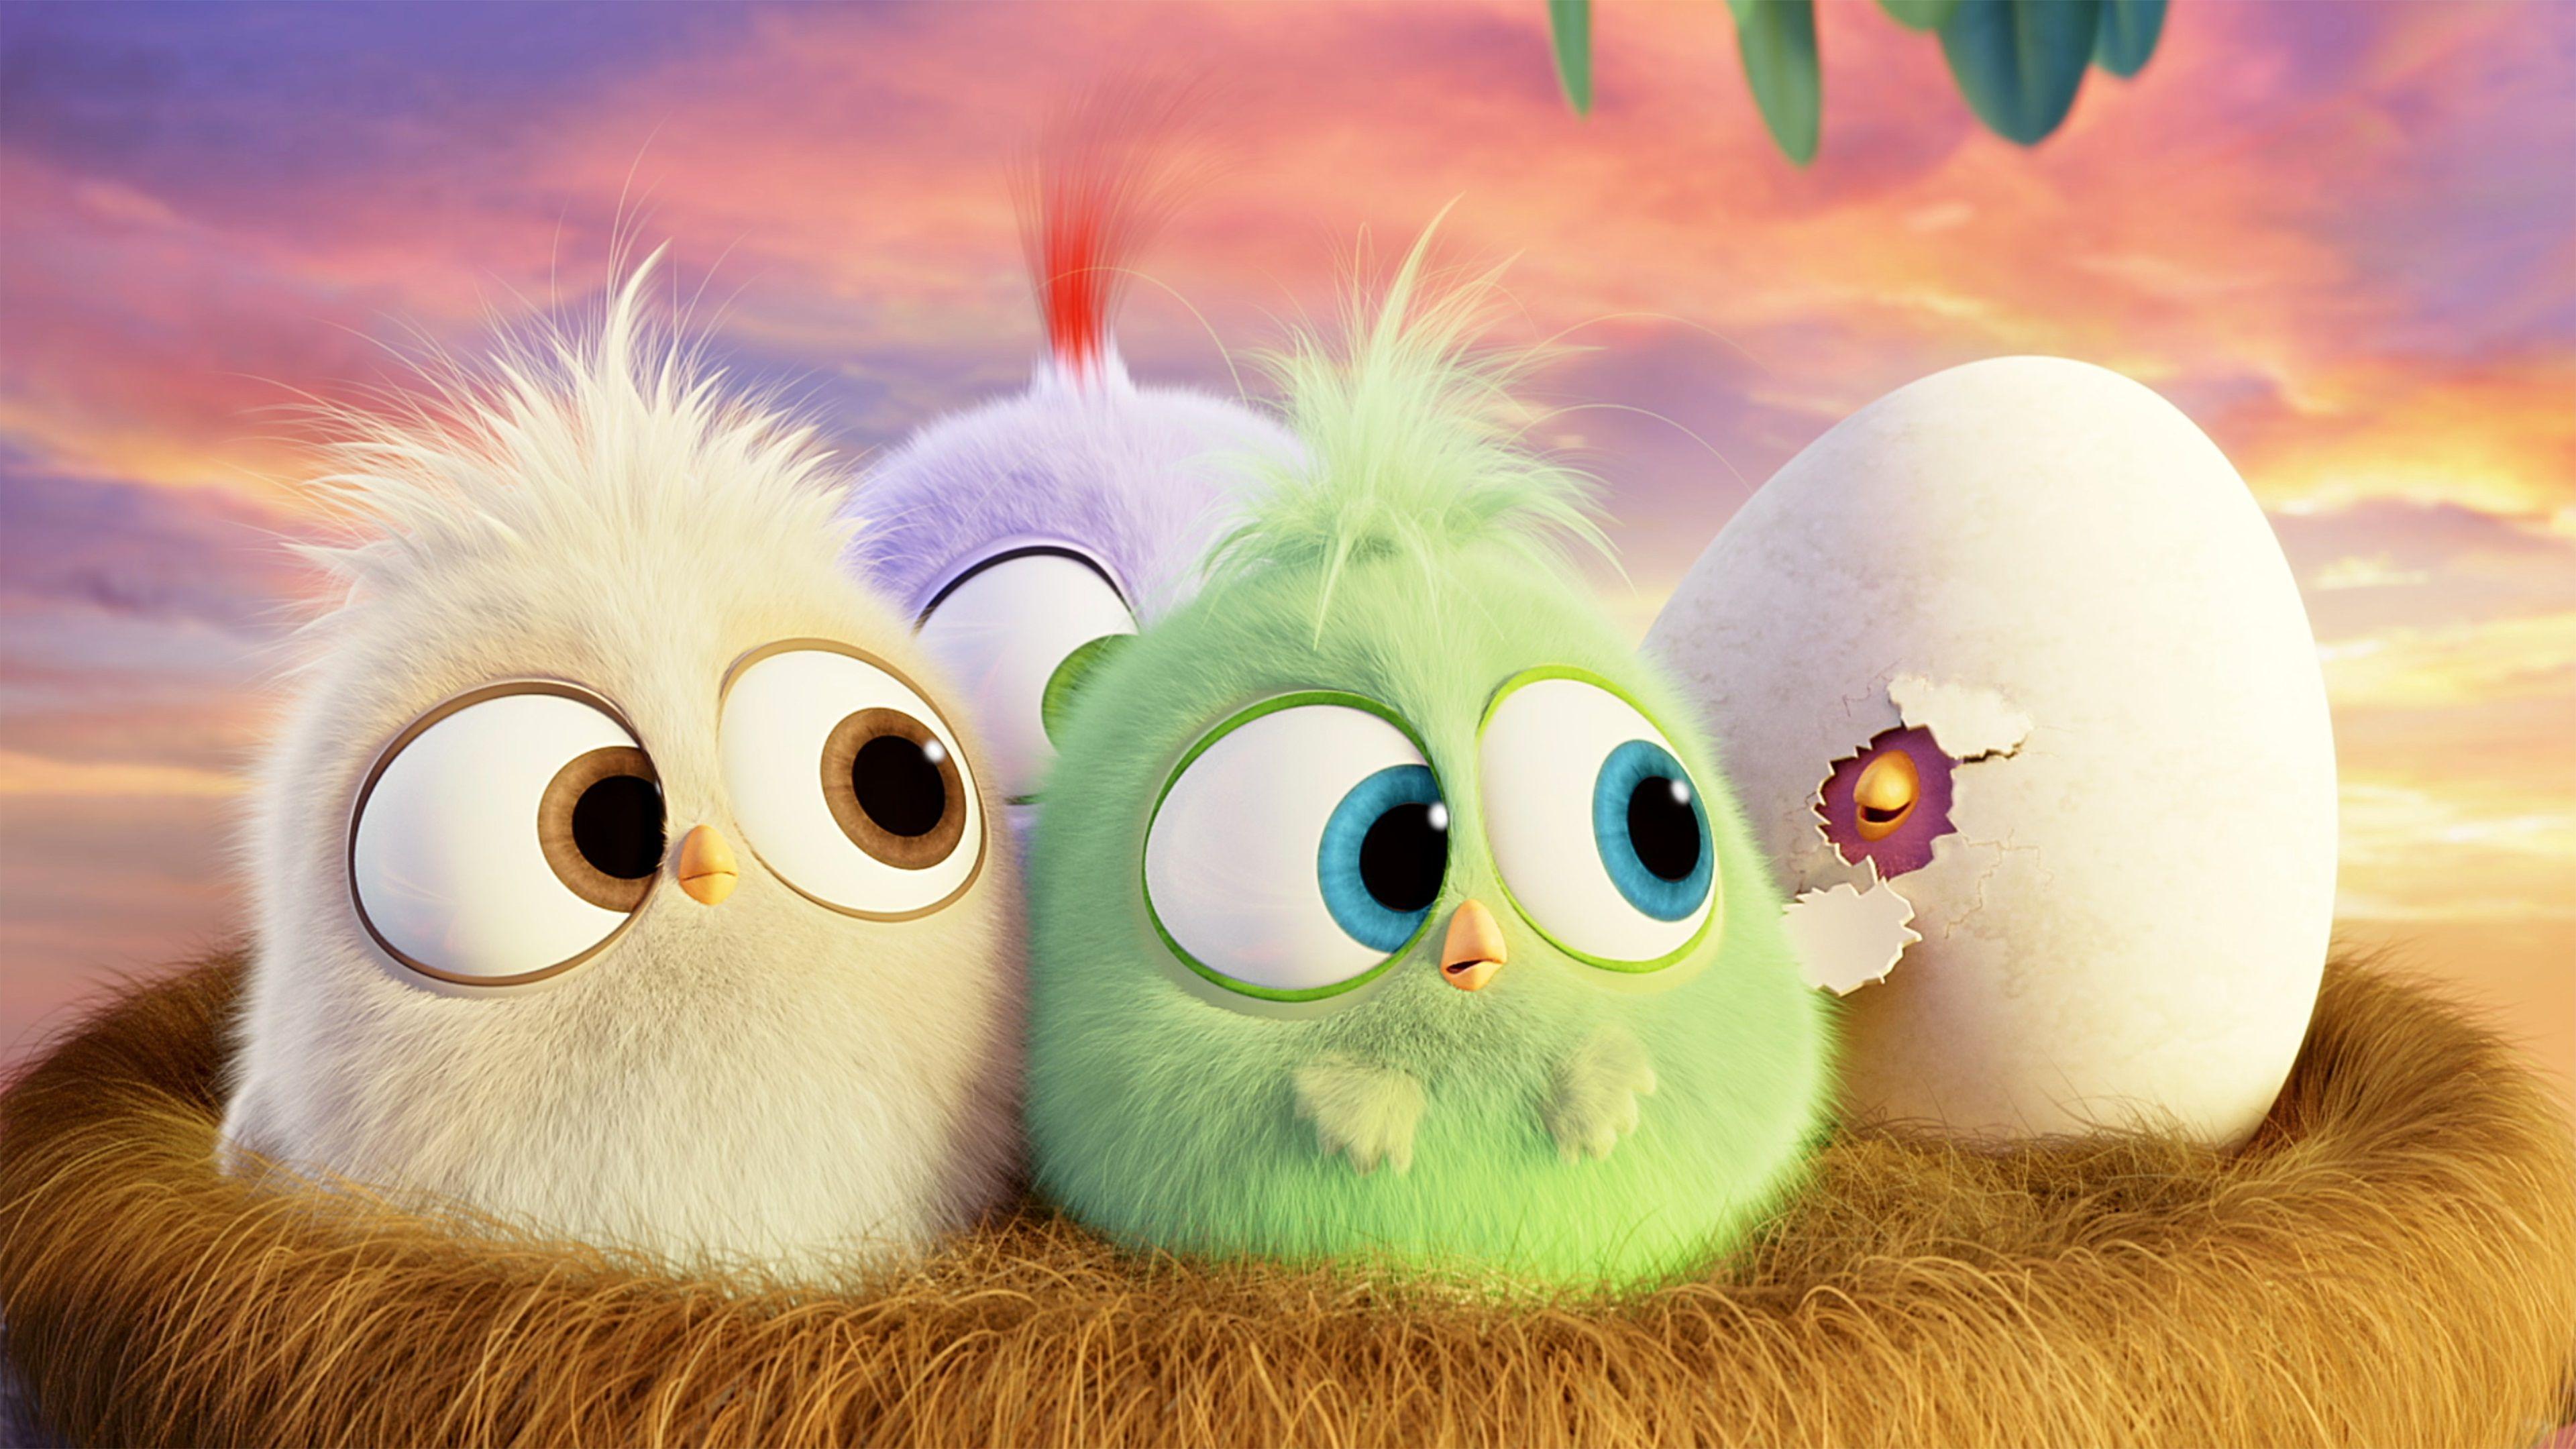 Hình nền Angry Birds sẽ mang lại cho bạn niềm vui và phấn khích mỗi khi nhìn vào màn hình máy tính. Với những hình ảnh vui nhộn của các nhân vật Angry Birds, bạn sẽ cảm thấy như đang tham gia một trận chiến đầy kịch tính với những chú chim dễ thương.